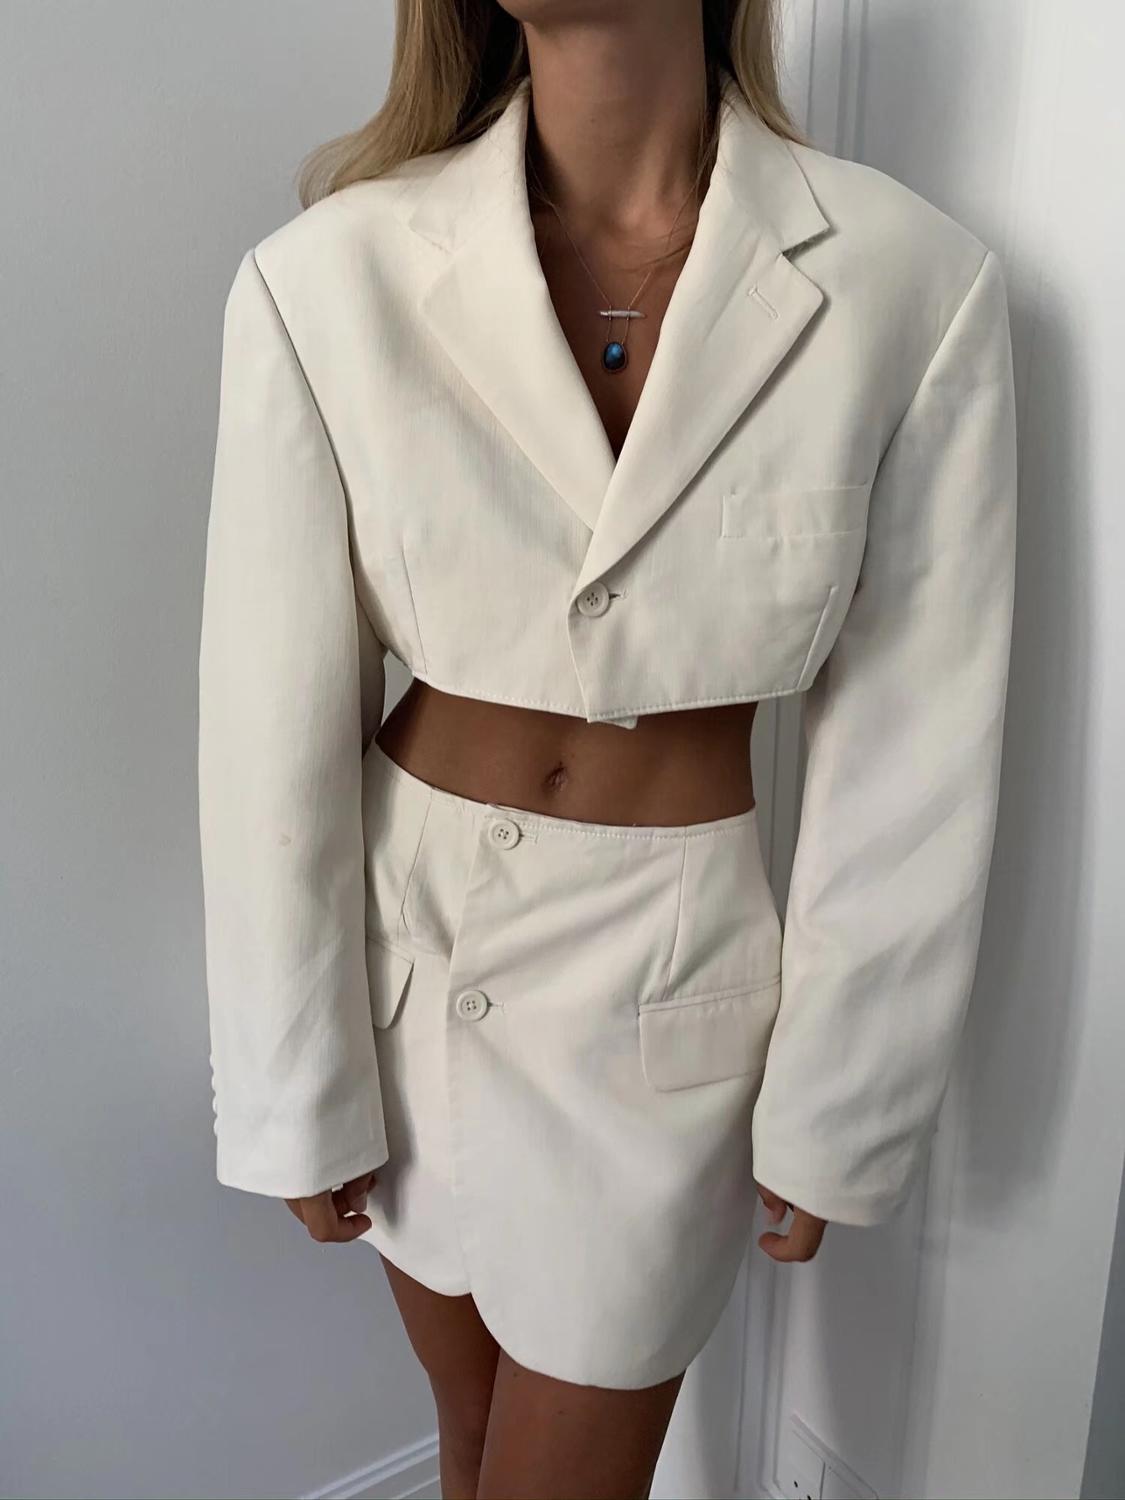 Sexy One Button Short Women Blazer Cropped High Waist Irregular Cross Slit Mini Skirt Long Sleeve Suits 2 Pieces Set Vintage